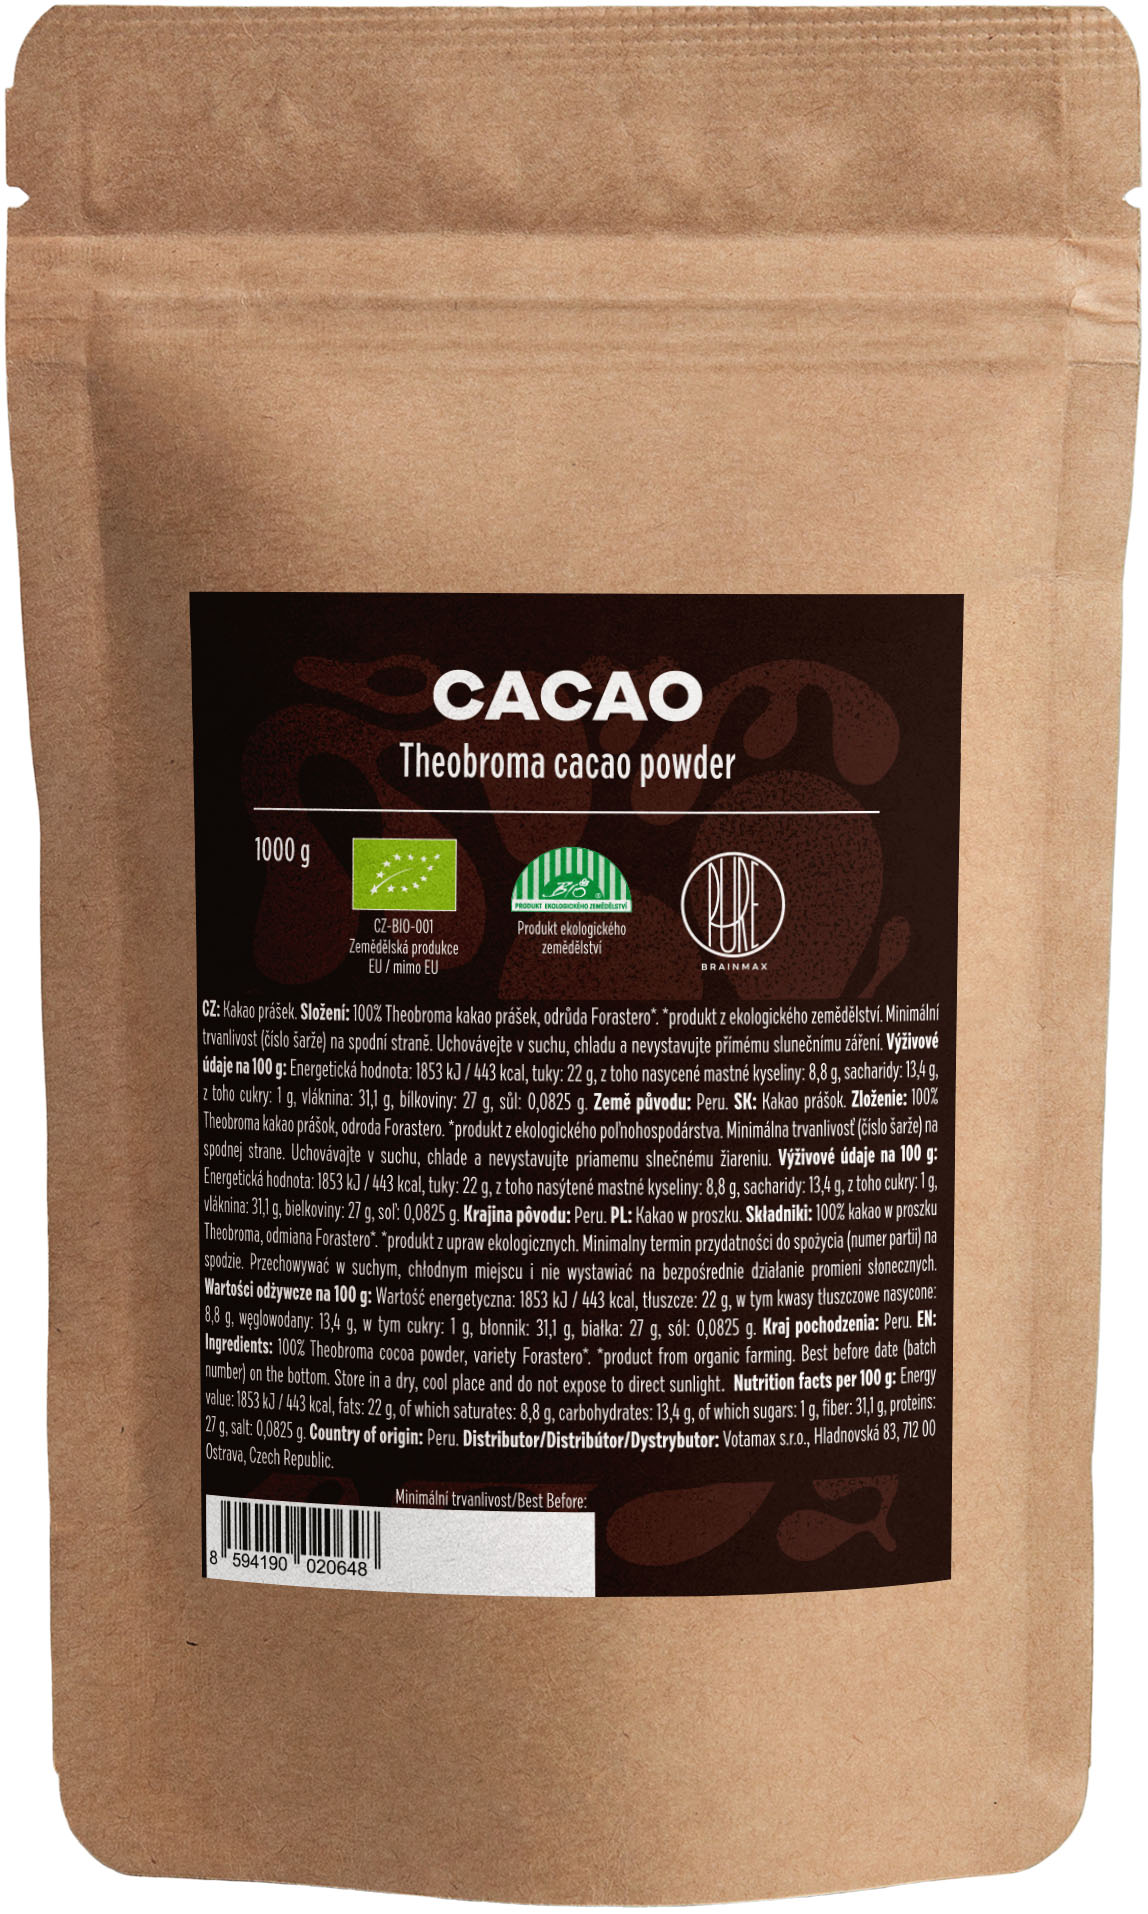 BrainMax Pure Cacao, Bio Kakao z Peru, 1000 g *CZ-BIO-001 certifikát